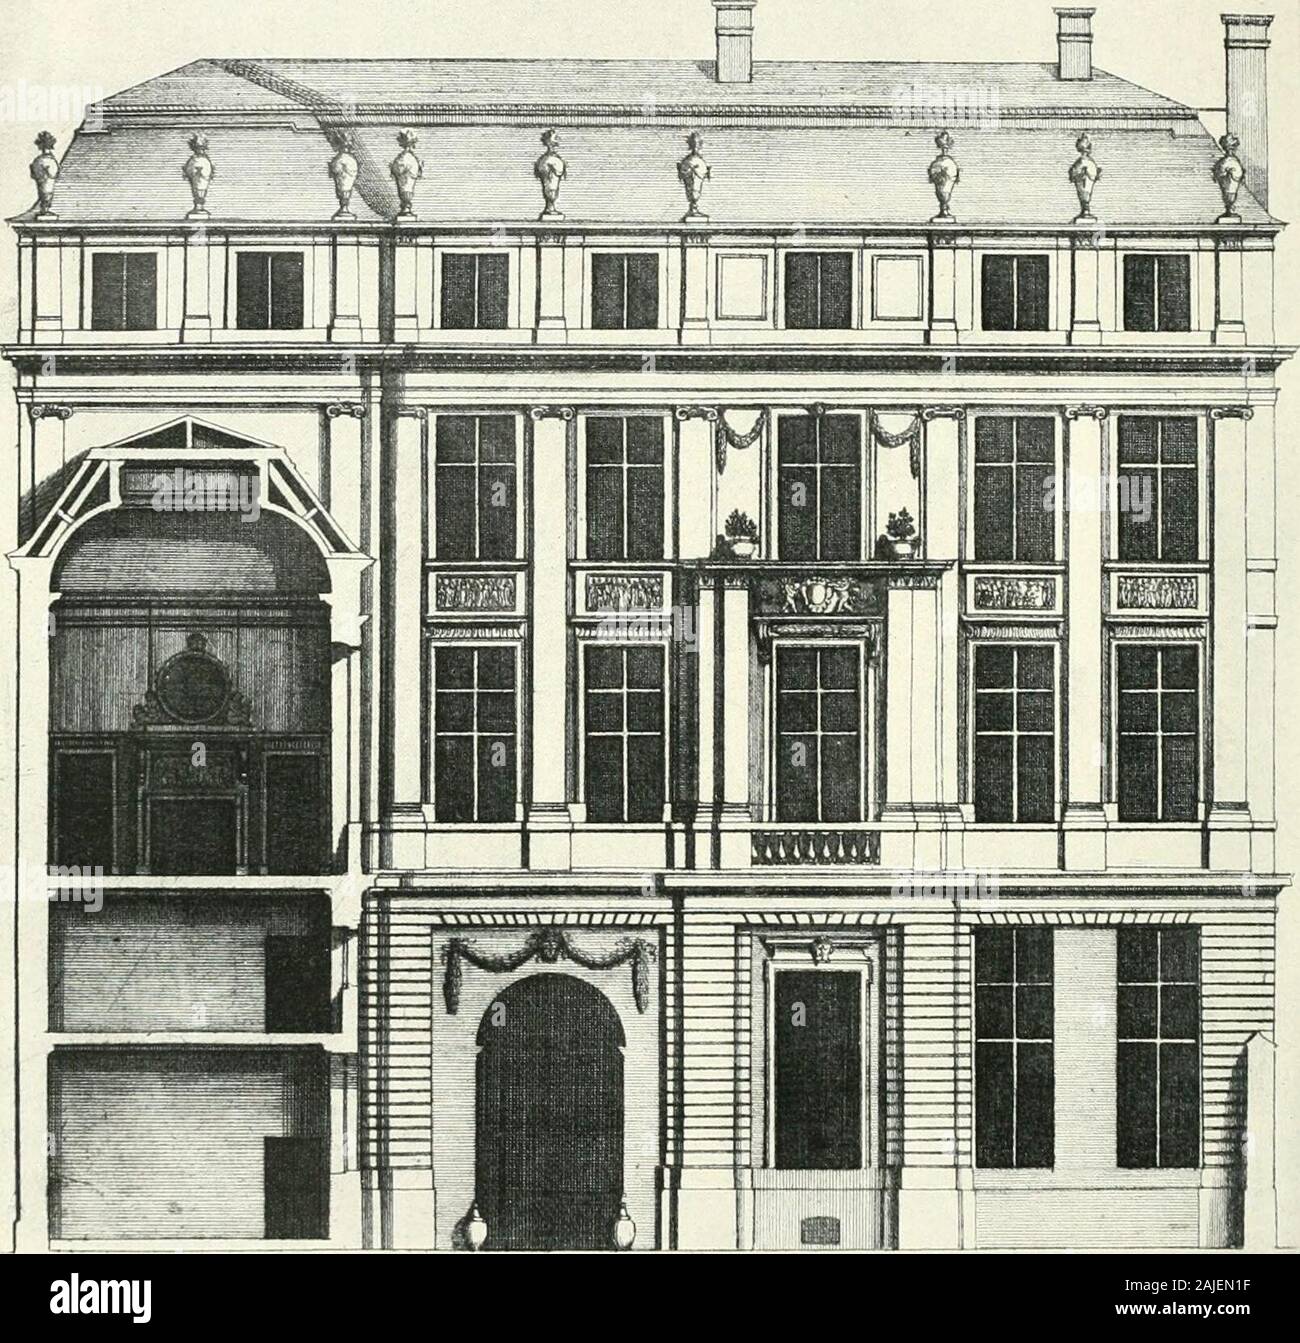 A history of French architecture from the death of Mazarin till the death  of Louis XV, 1661-1774 . Je vrnti /faru C^t Jtlc^u-t-J Lan^lffu ru*  SltuiftuJ a.Lt fttturmmf OROUXn PLAN IJfe-of ficif